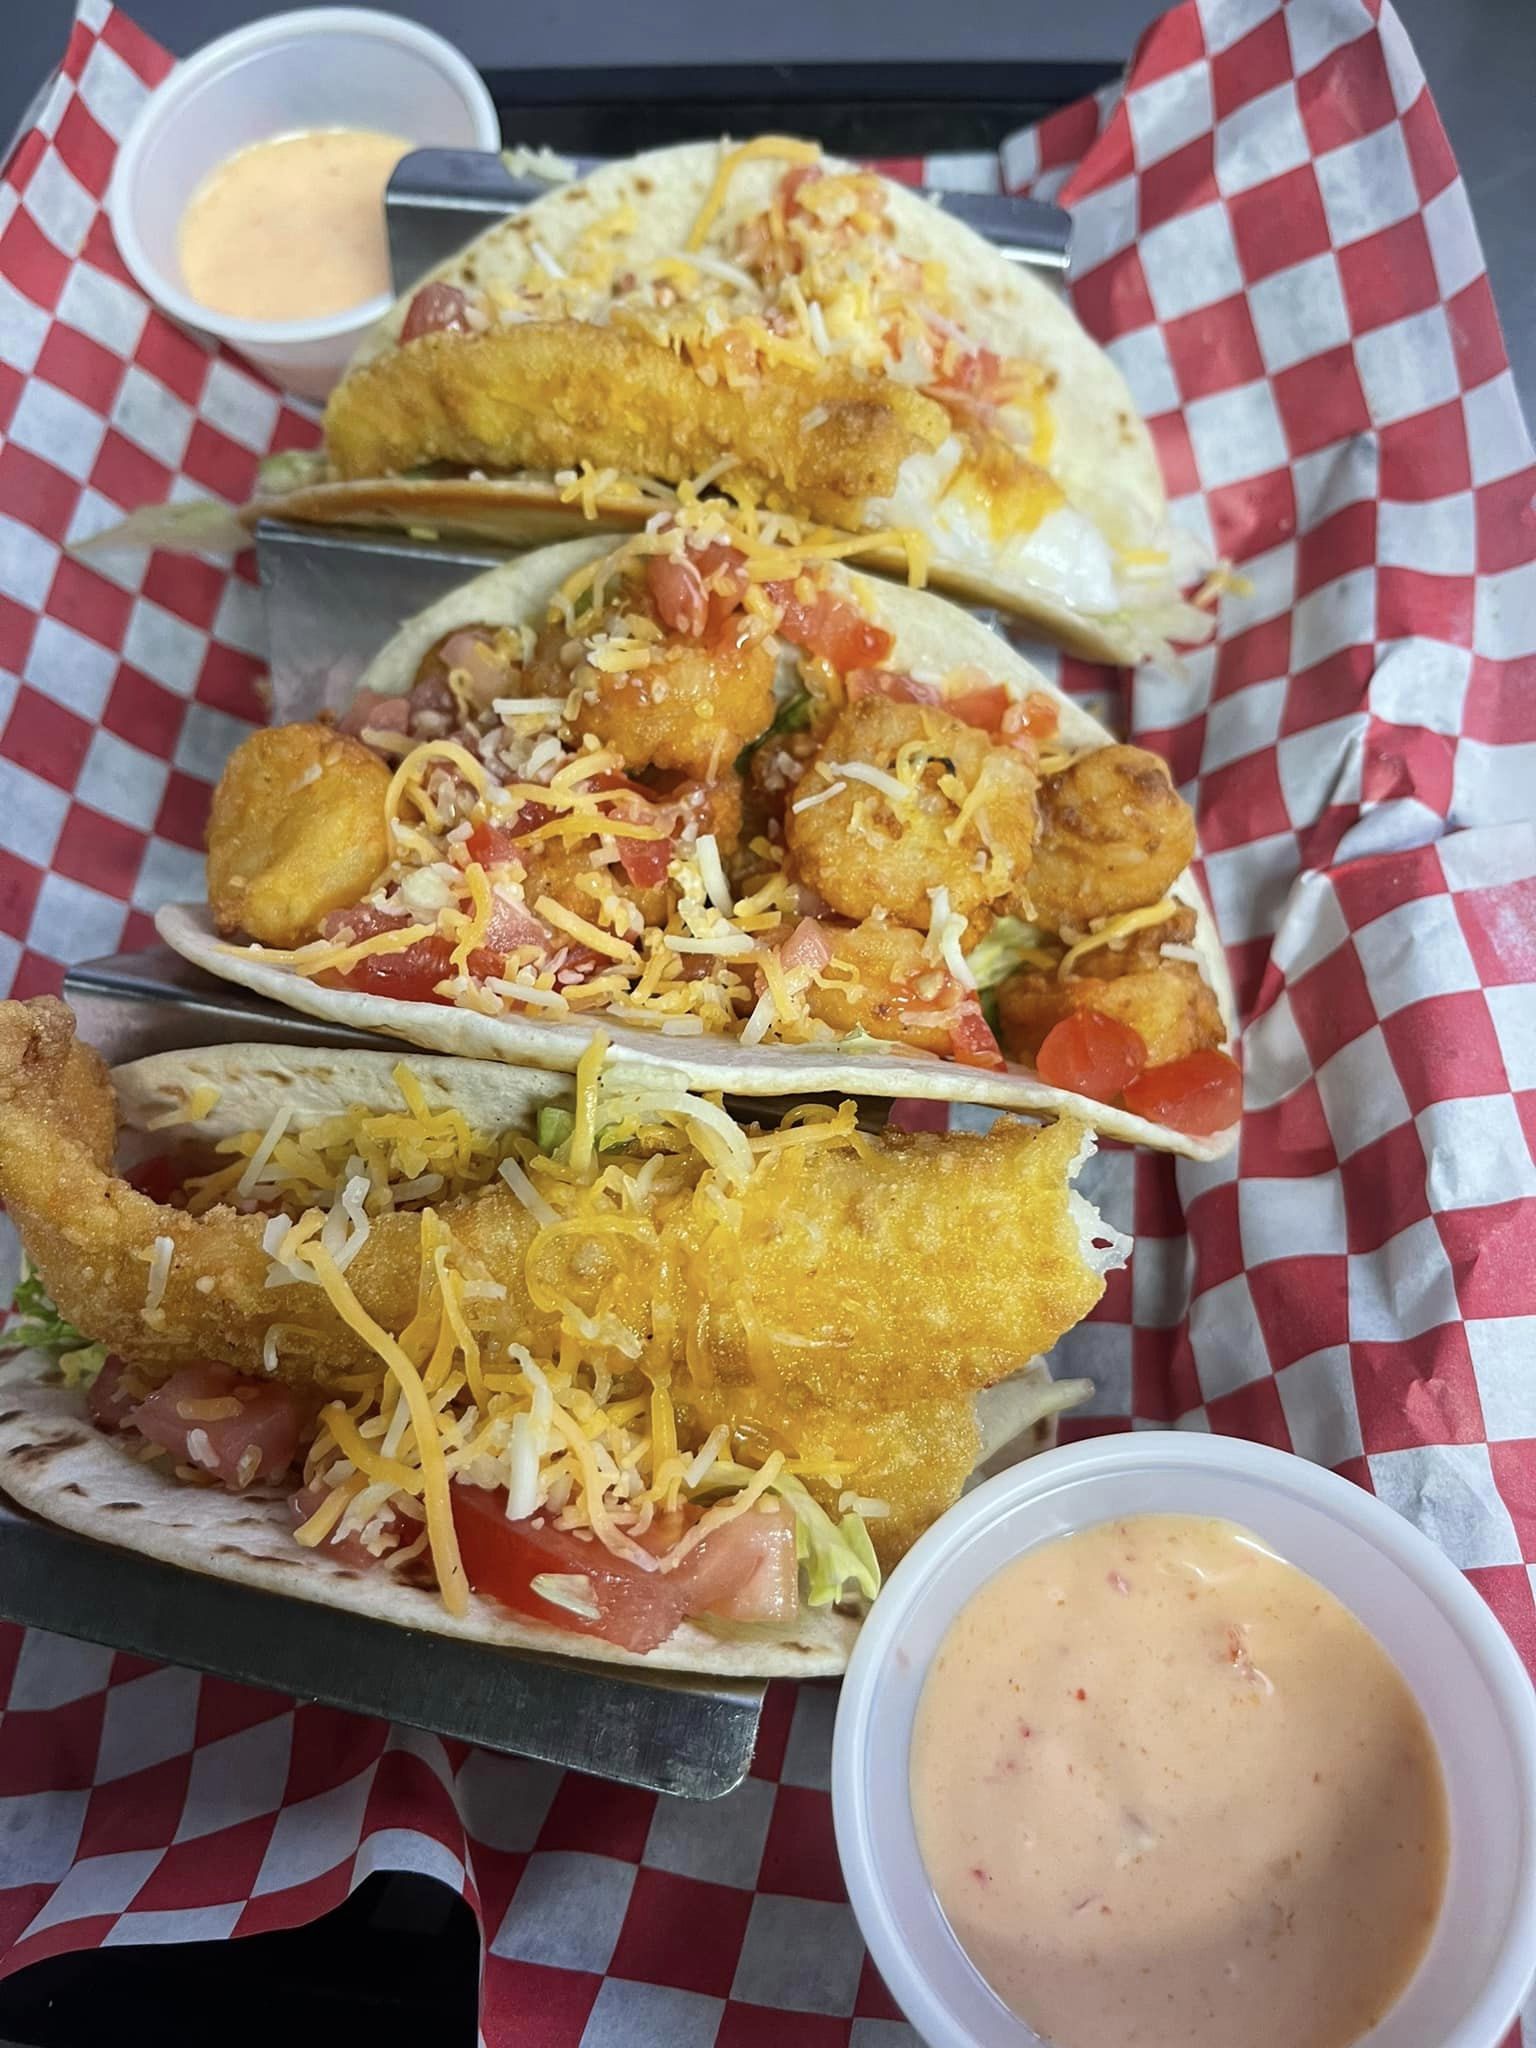 Shrimp & fried fish tacos